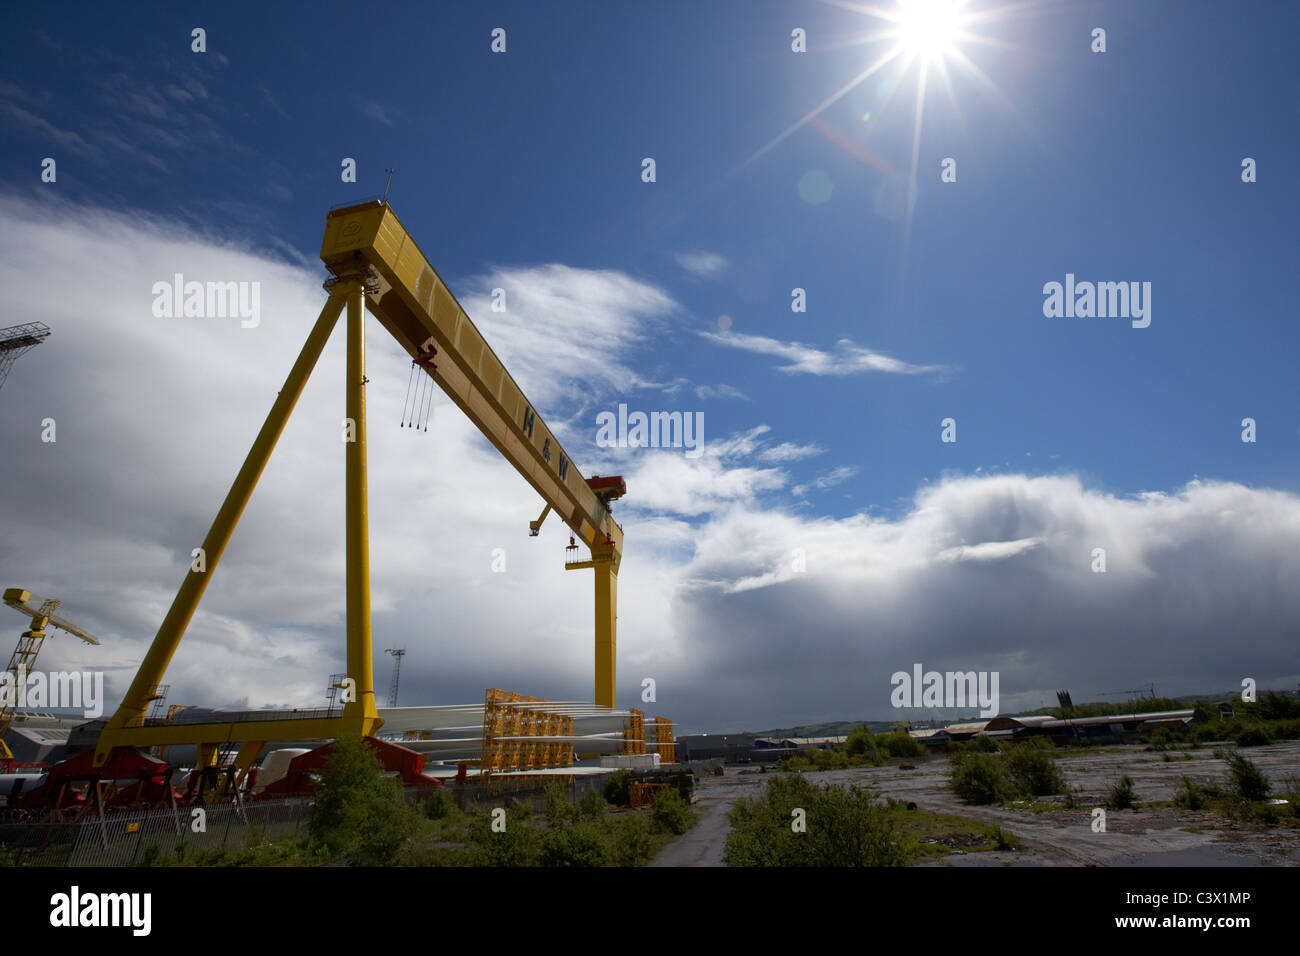 Harland and Wolff géant Goliath grue chantier à queens belfast titanic quarter de l'île de l'Irlande du Nord uk Banque D'Images